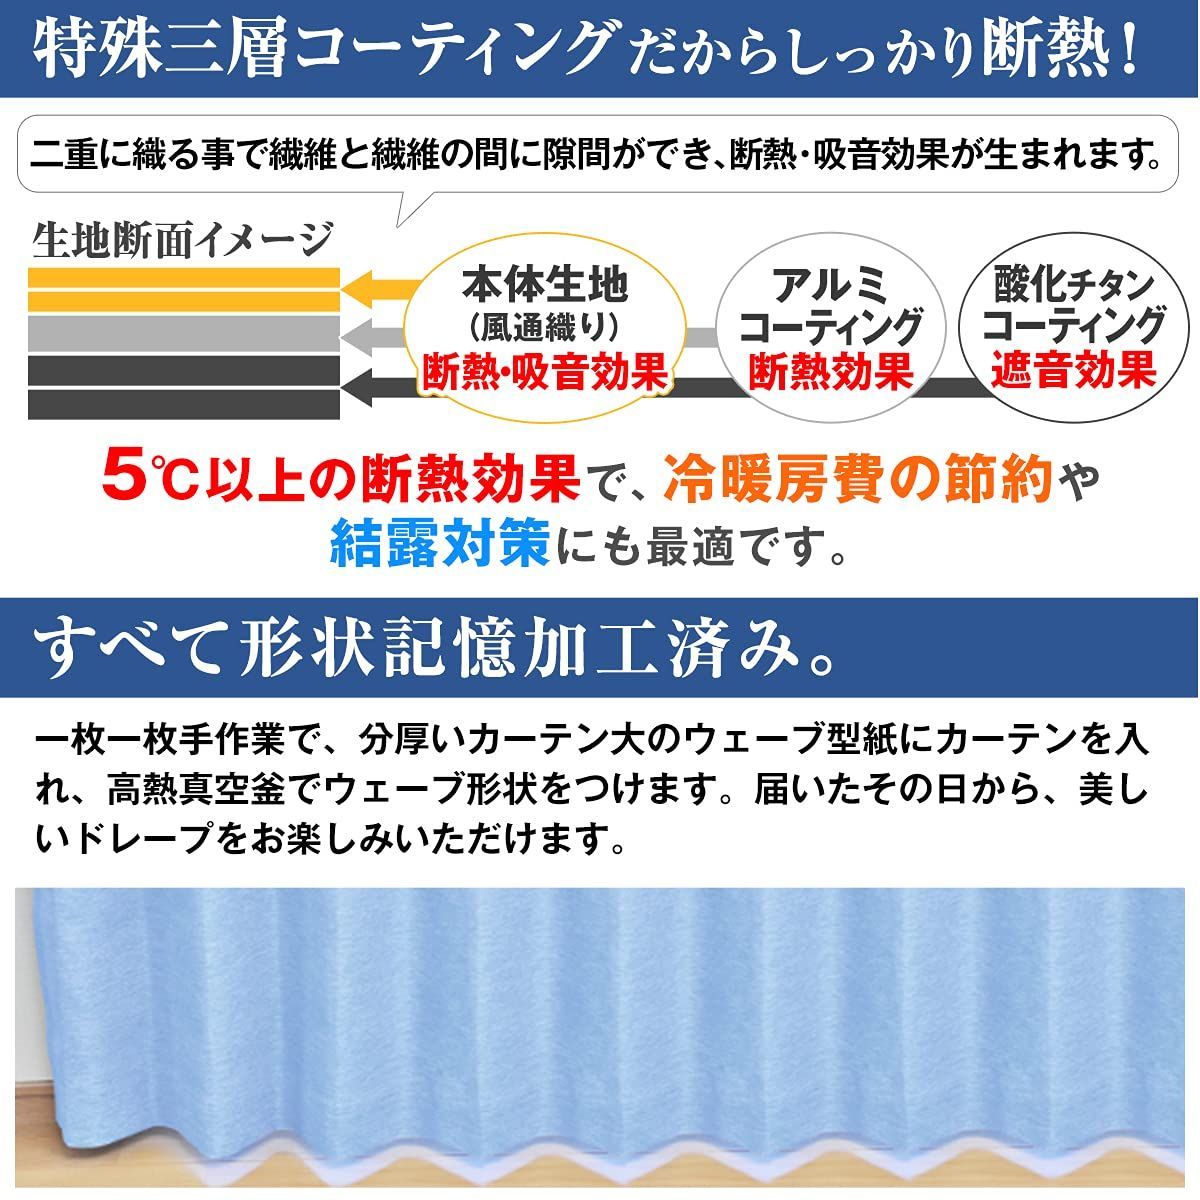 [カーテンくれない] 断熱・遮熱カーテン「静 Shizuka」完全遮光生地使用遮音 防音効果で生活音を軽減 高断熱 静 遮光1級 全1 - 3